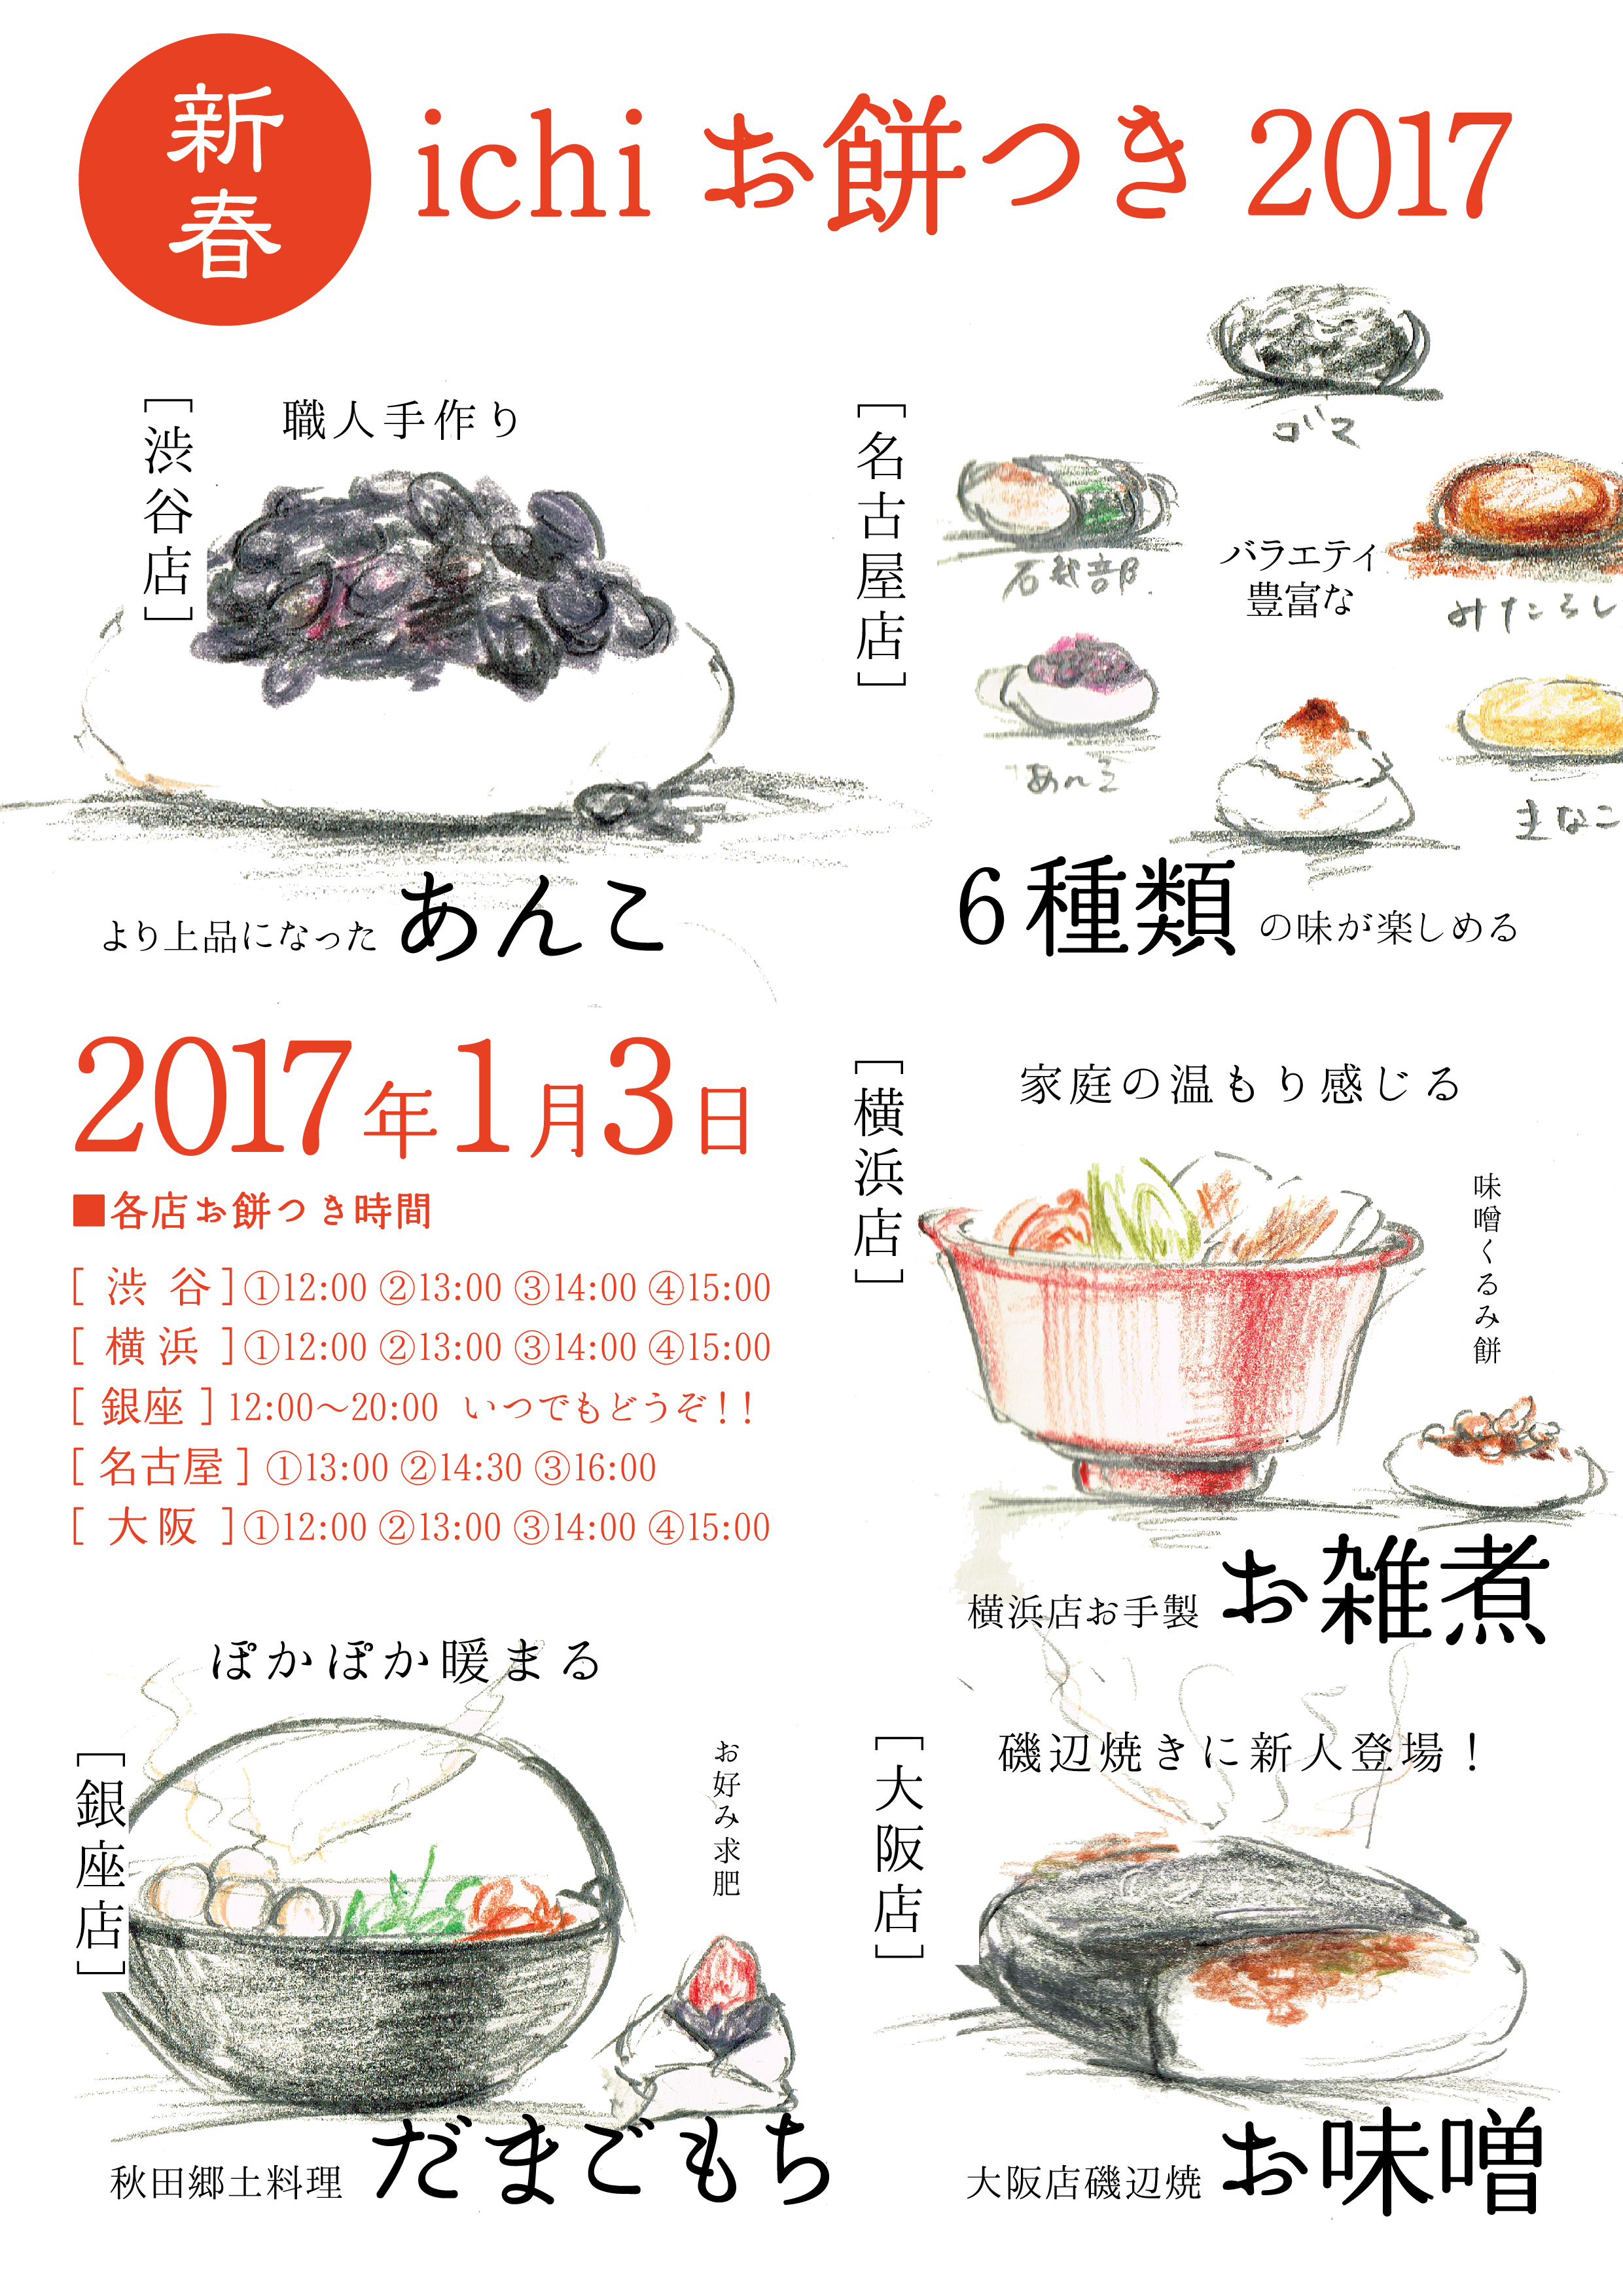 新春 ichi餅つきの会 2017